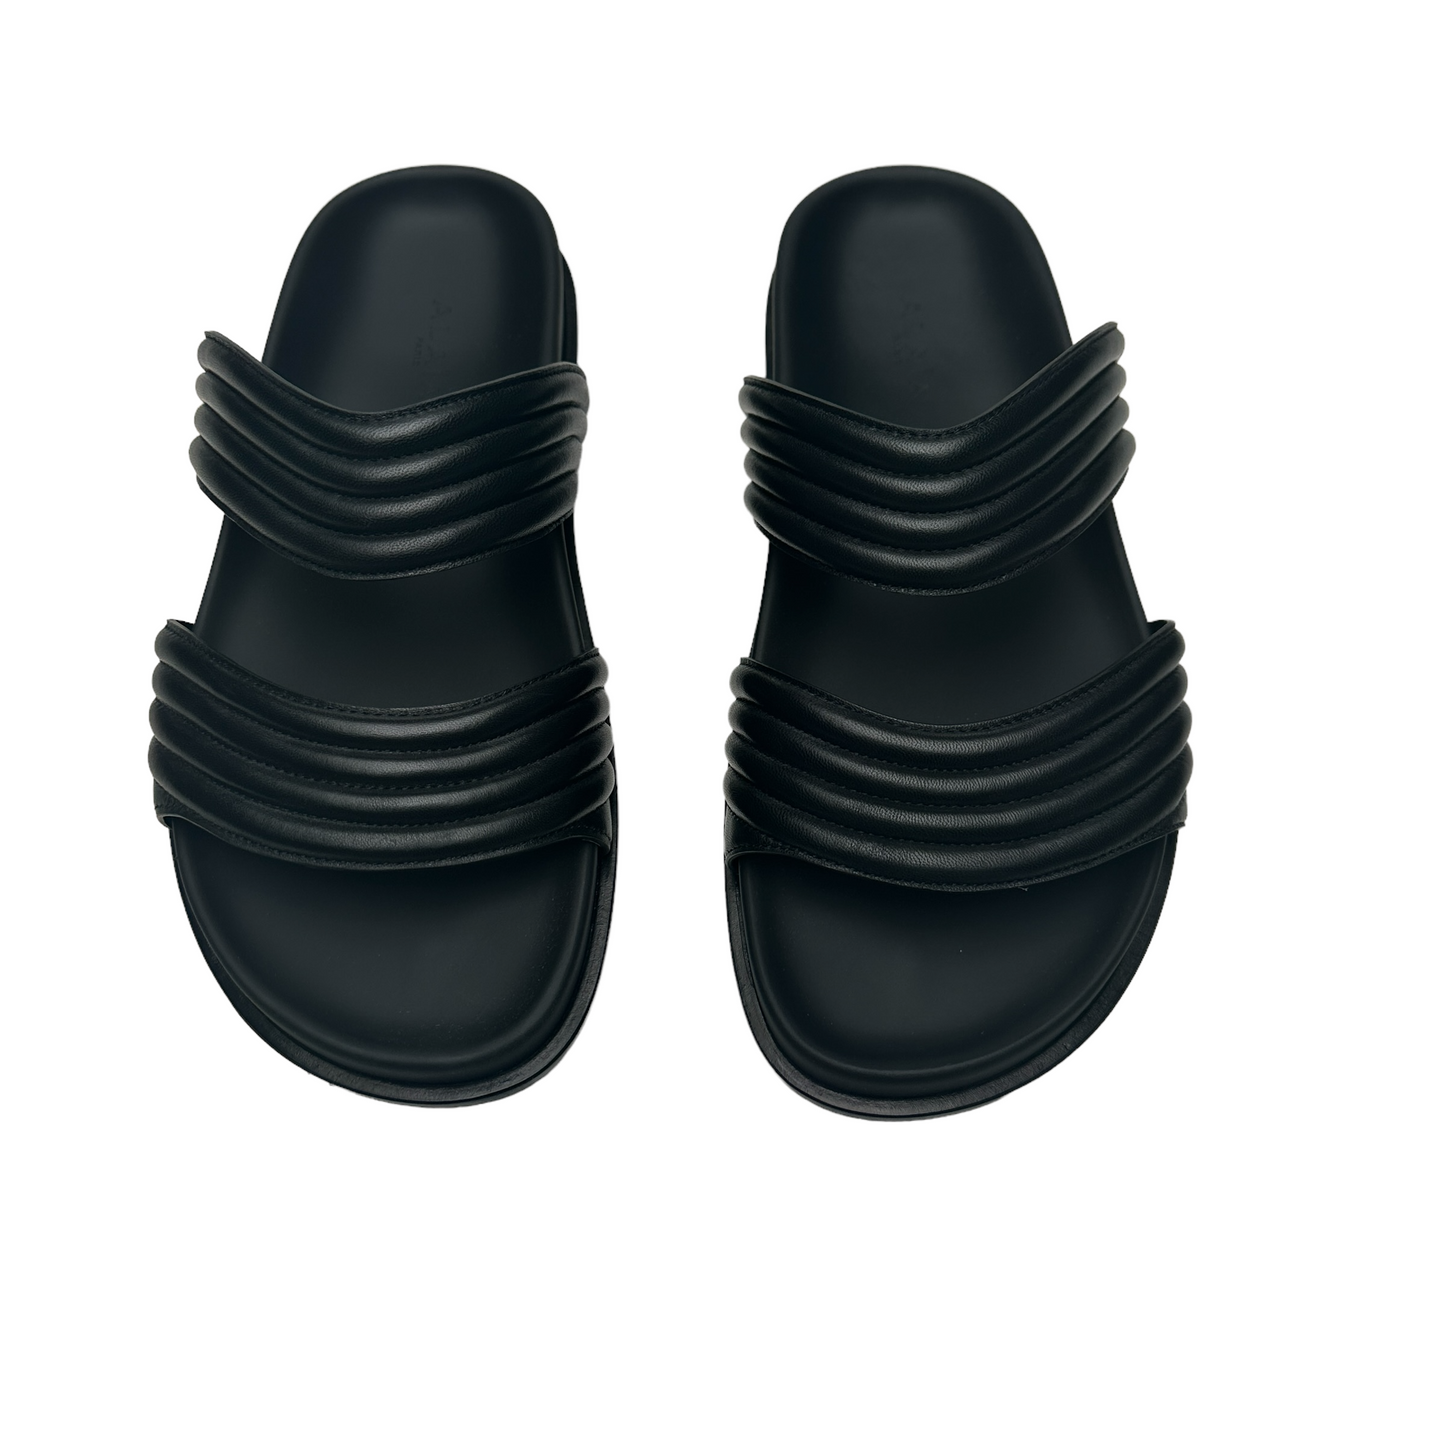 Black Leather Slides - 8